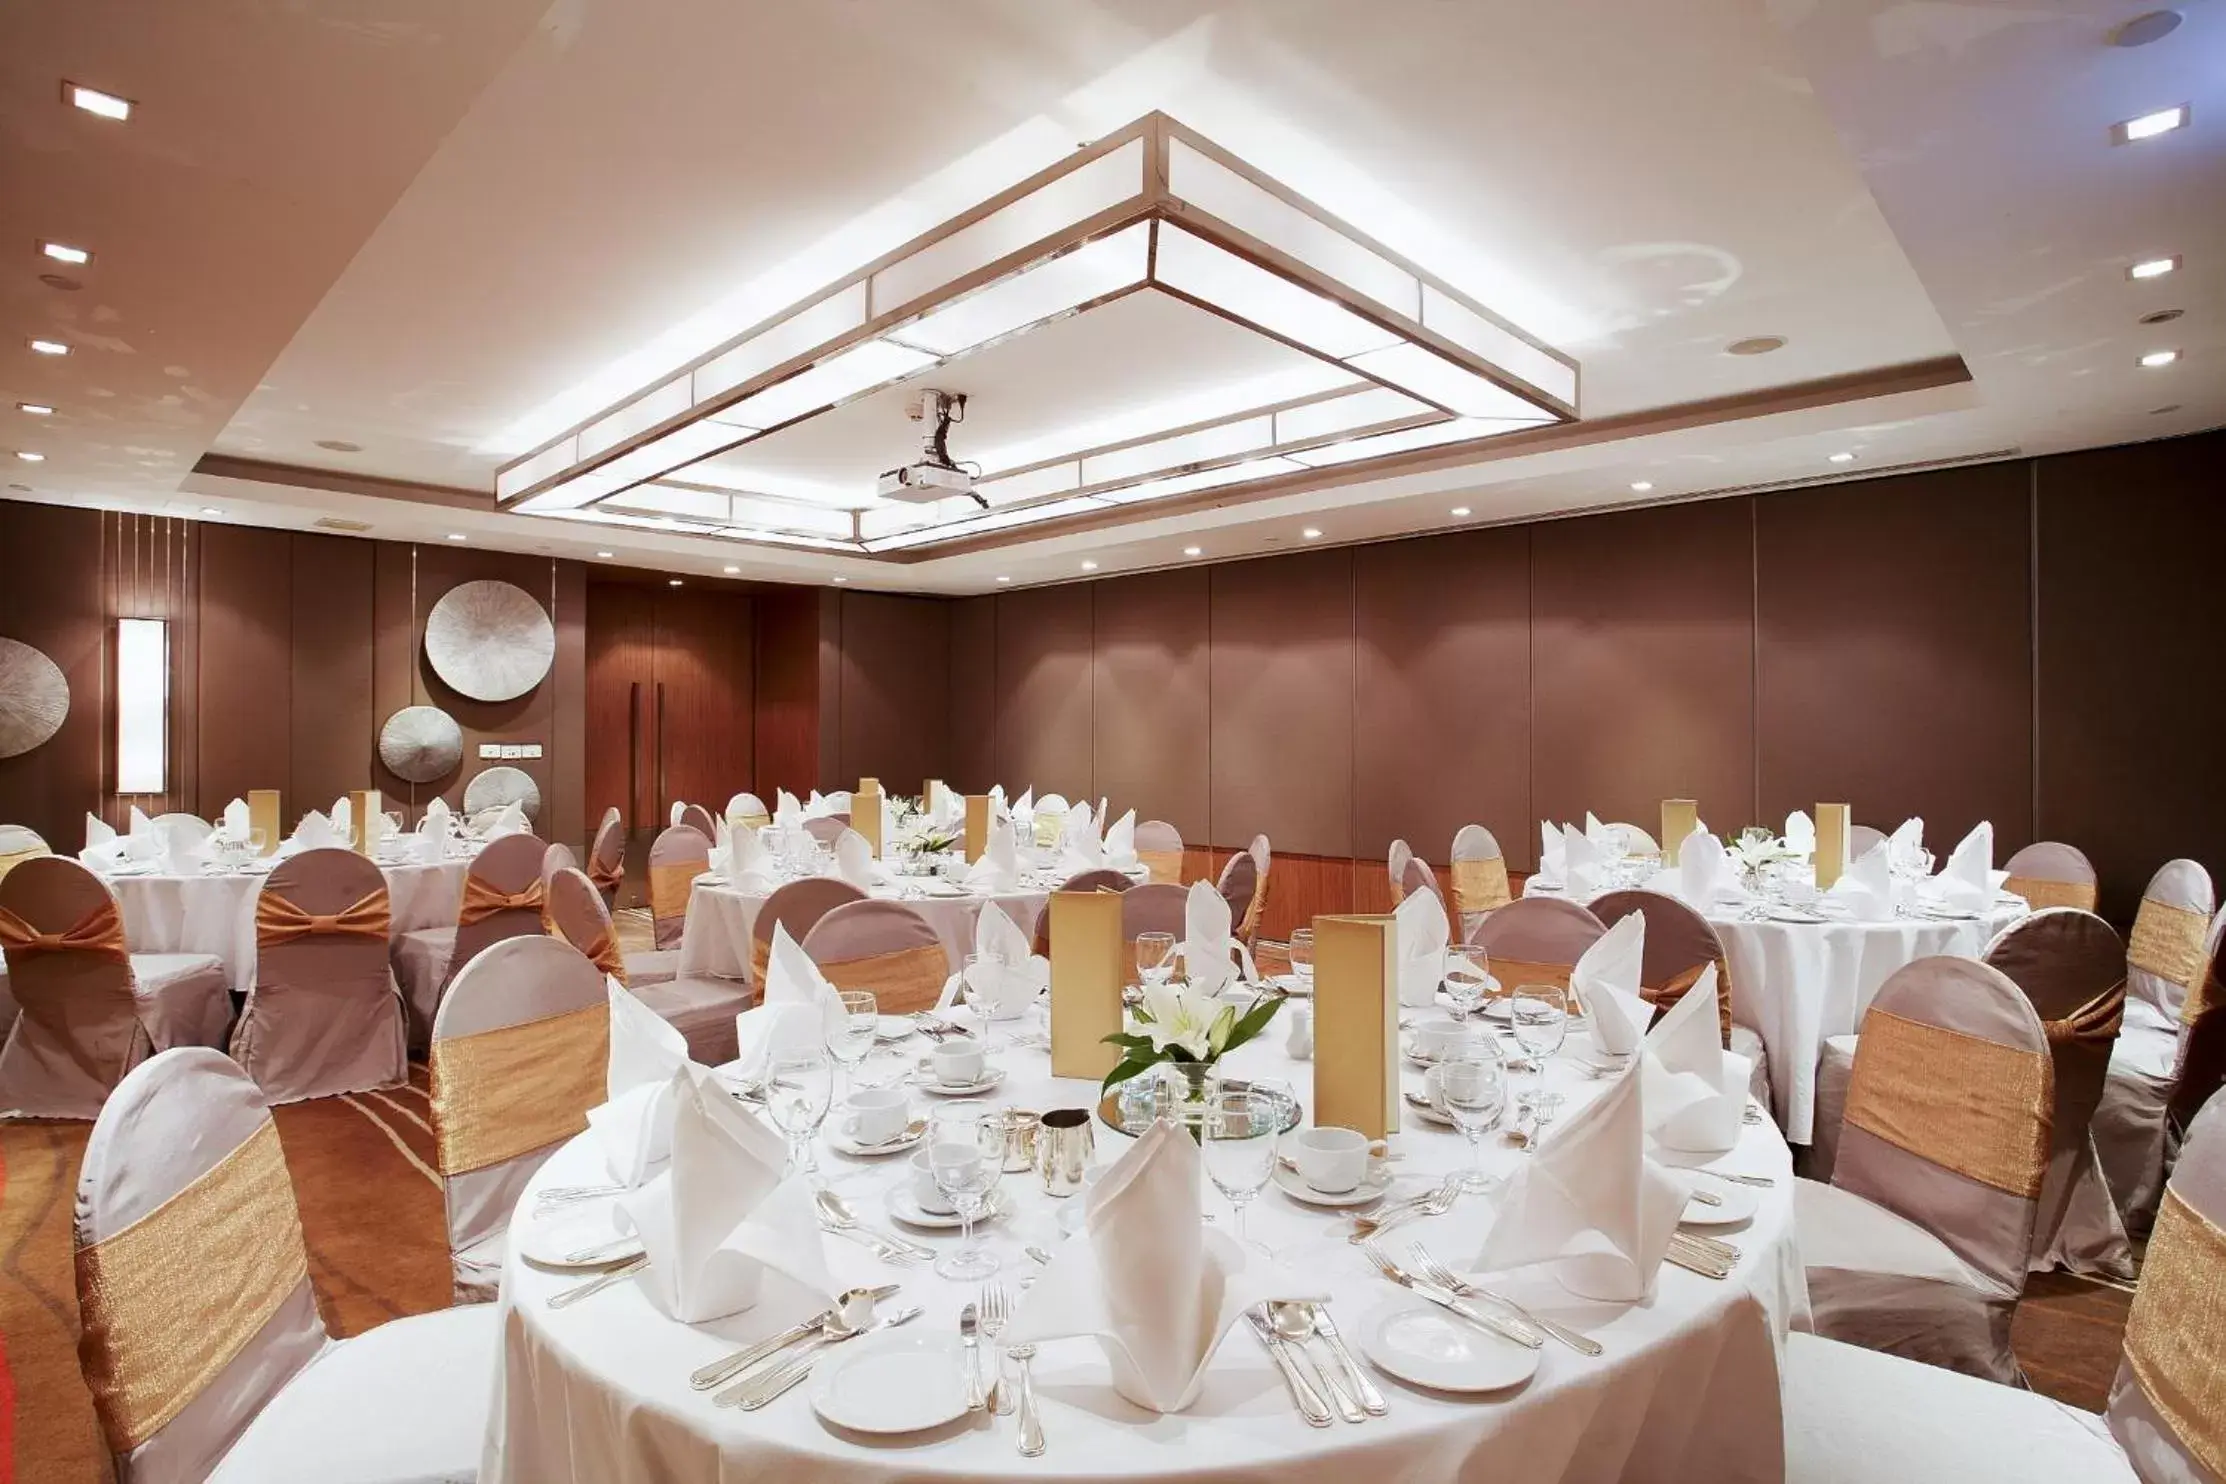 Meeting/conference room, Banquet Facilities in Centara Grand at Central Plaza Ladprao Bangkok